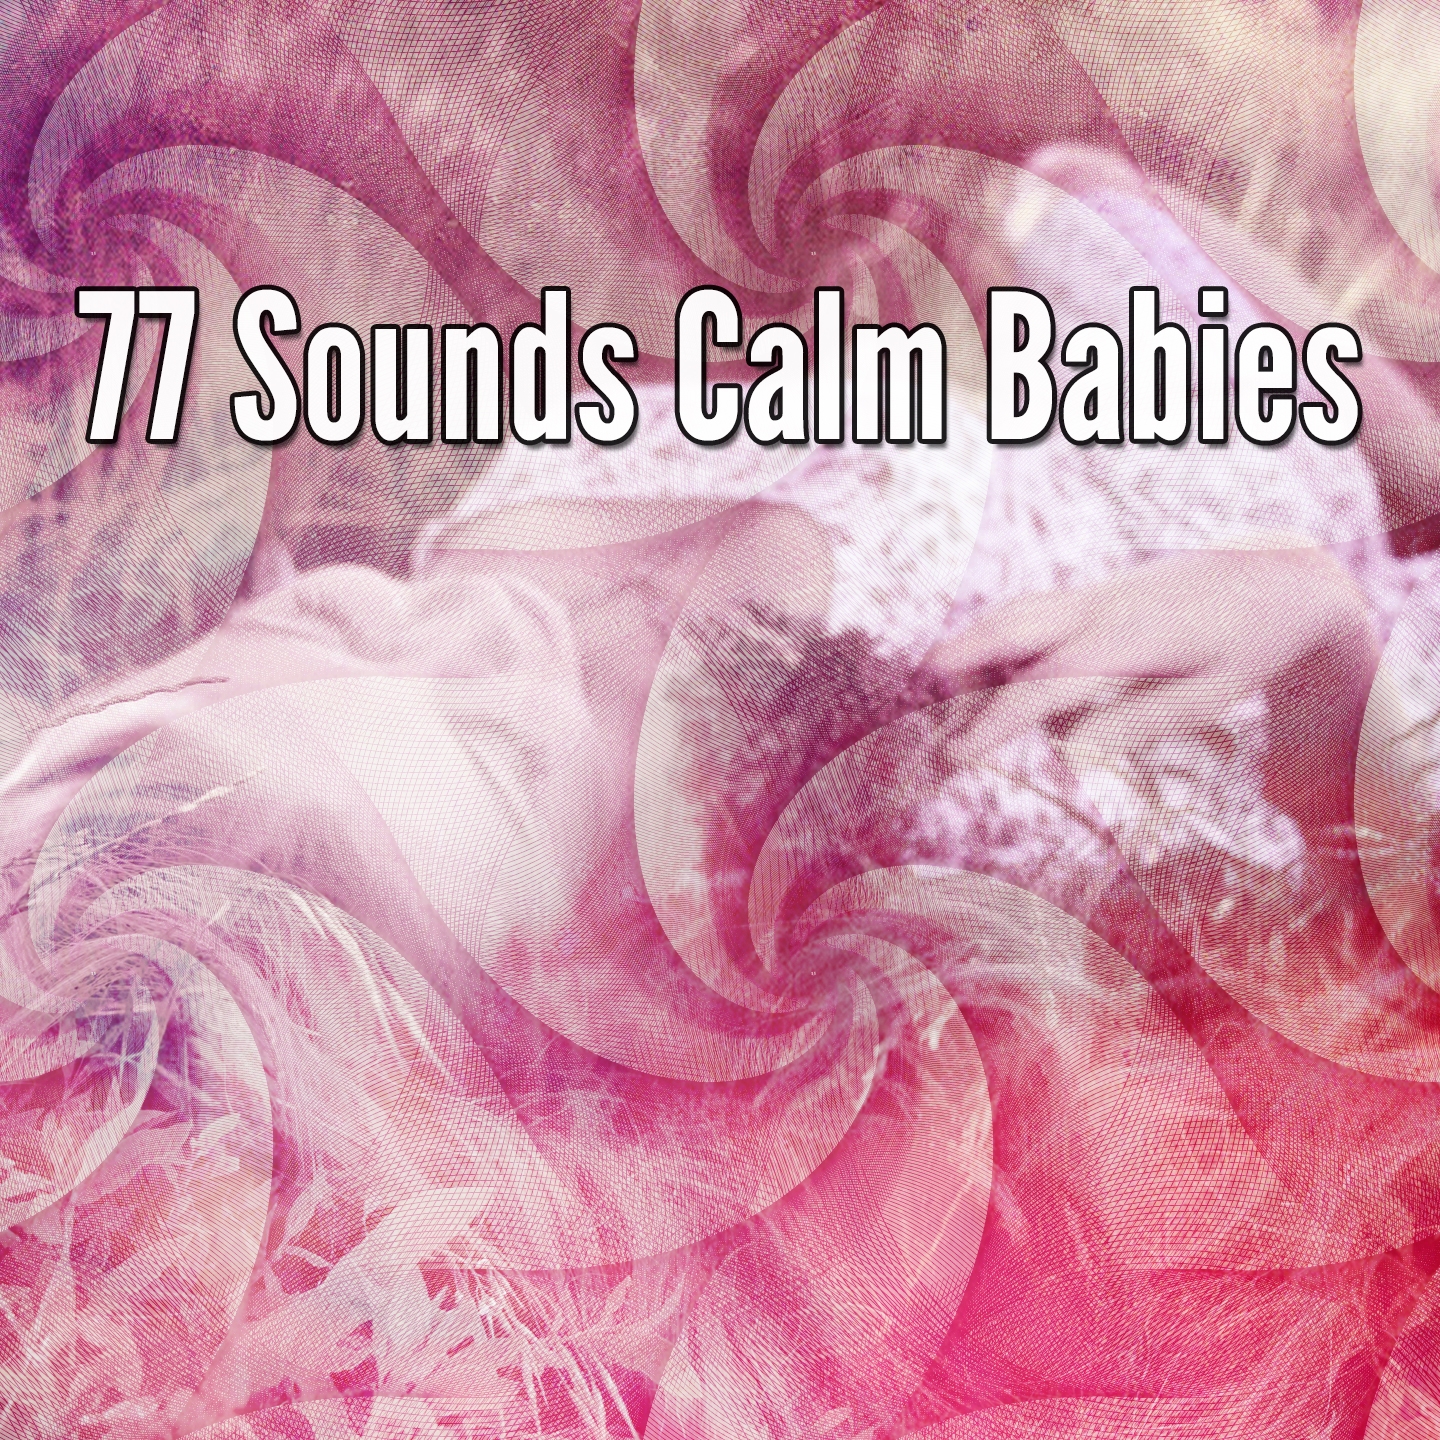 77 Sounds Calm Babies